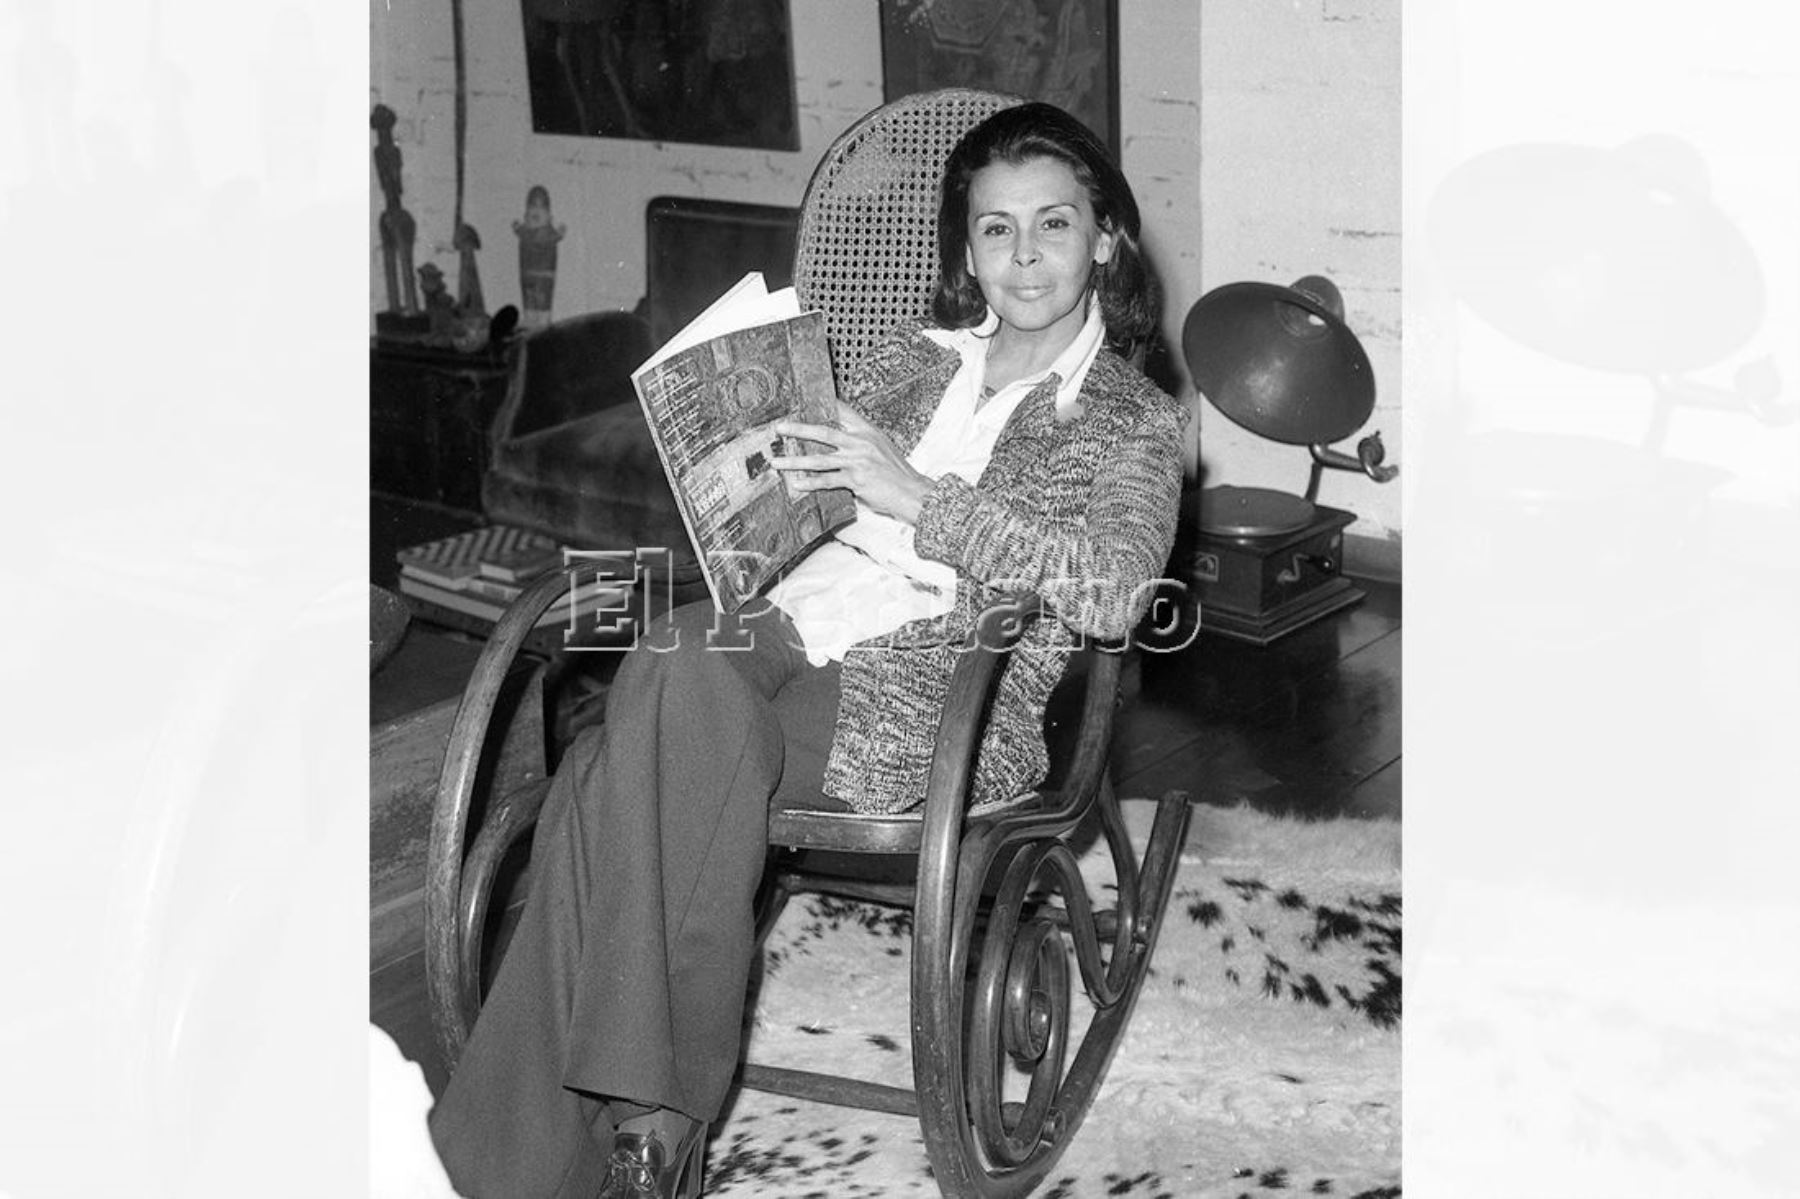 Lima - 5 julio 1975. Entrevista a la poeta Blanca Varela para suplemento Mundial de La Crónica. Foto: Archivo diario El Peruano